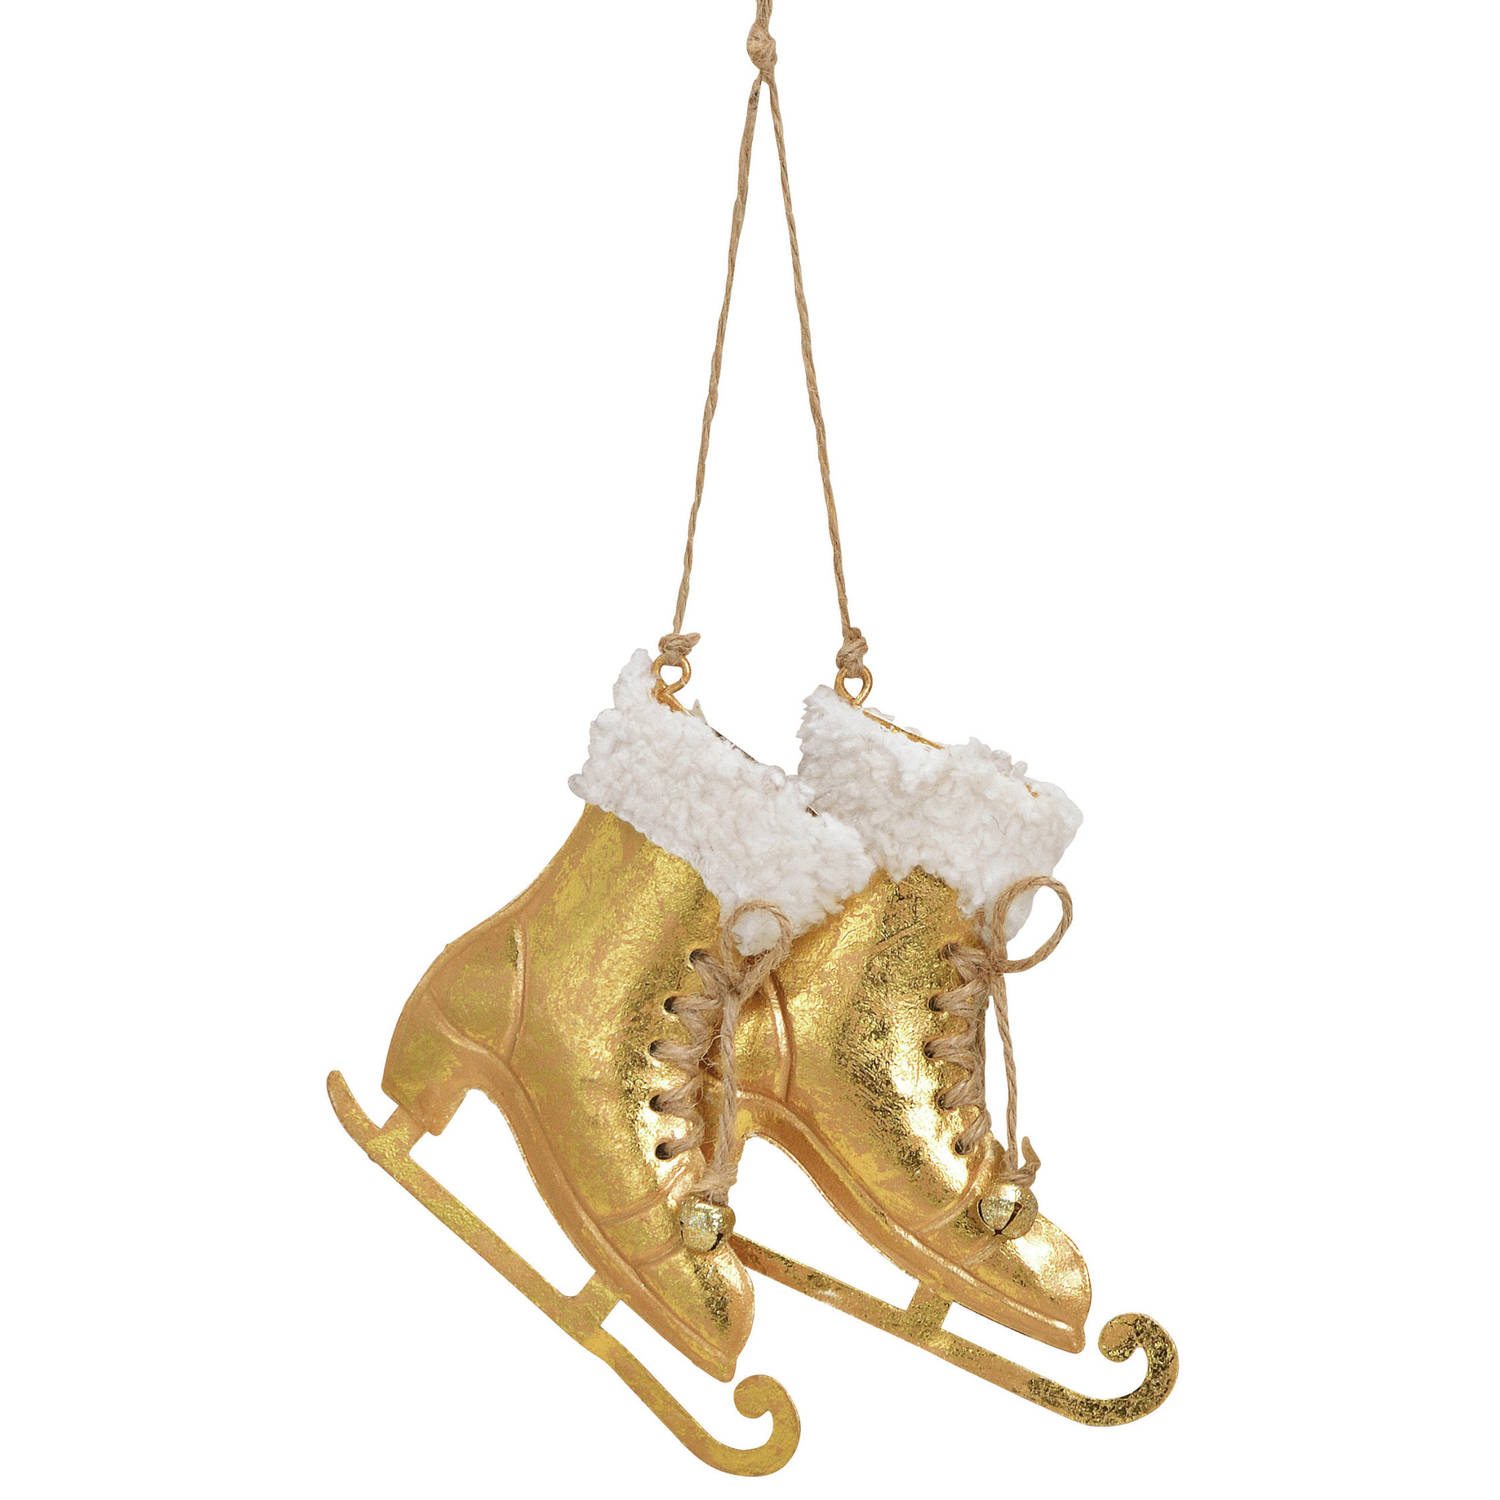 2x Kerstboomversiering schaats ornamenten goud 14 cm - Kersthangers